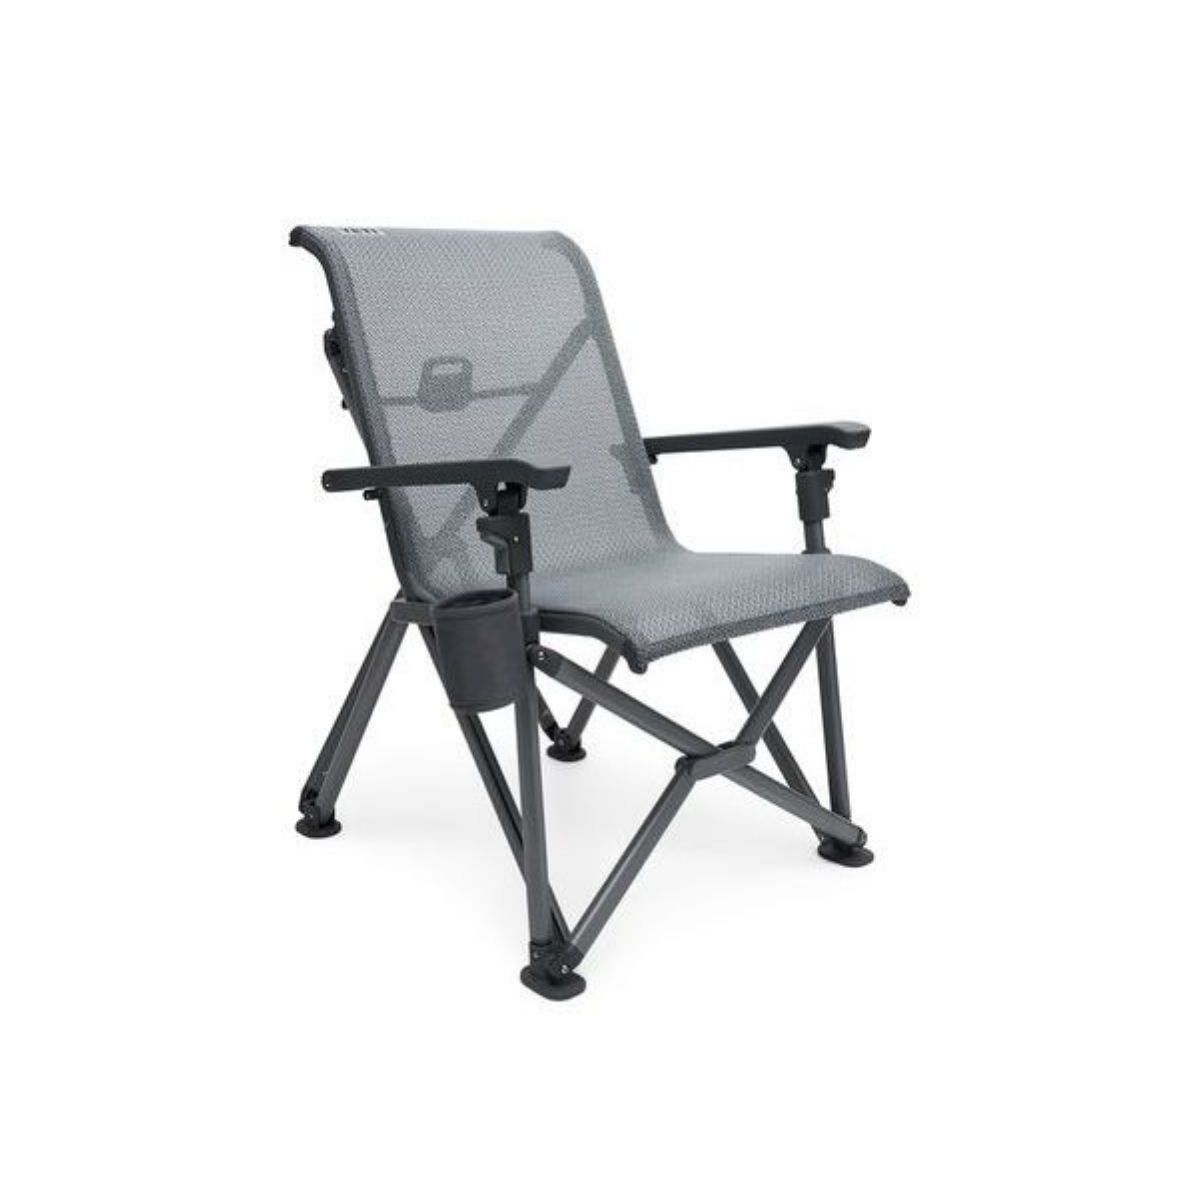 Yeti Trailhead Camp Chair - Sedia da campeggio